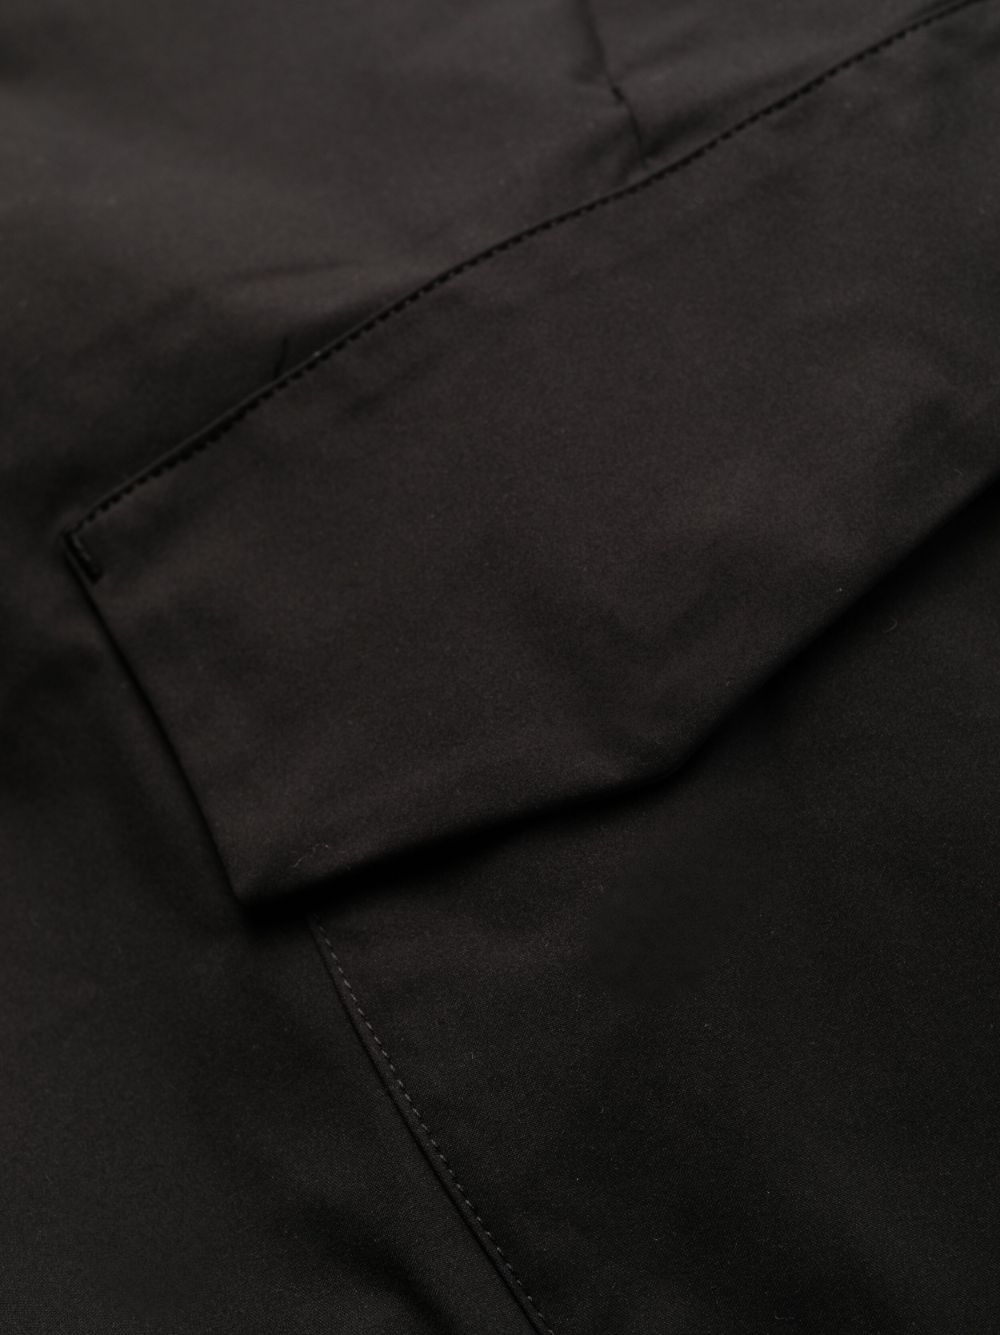 Pantalon cargo noir